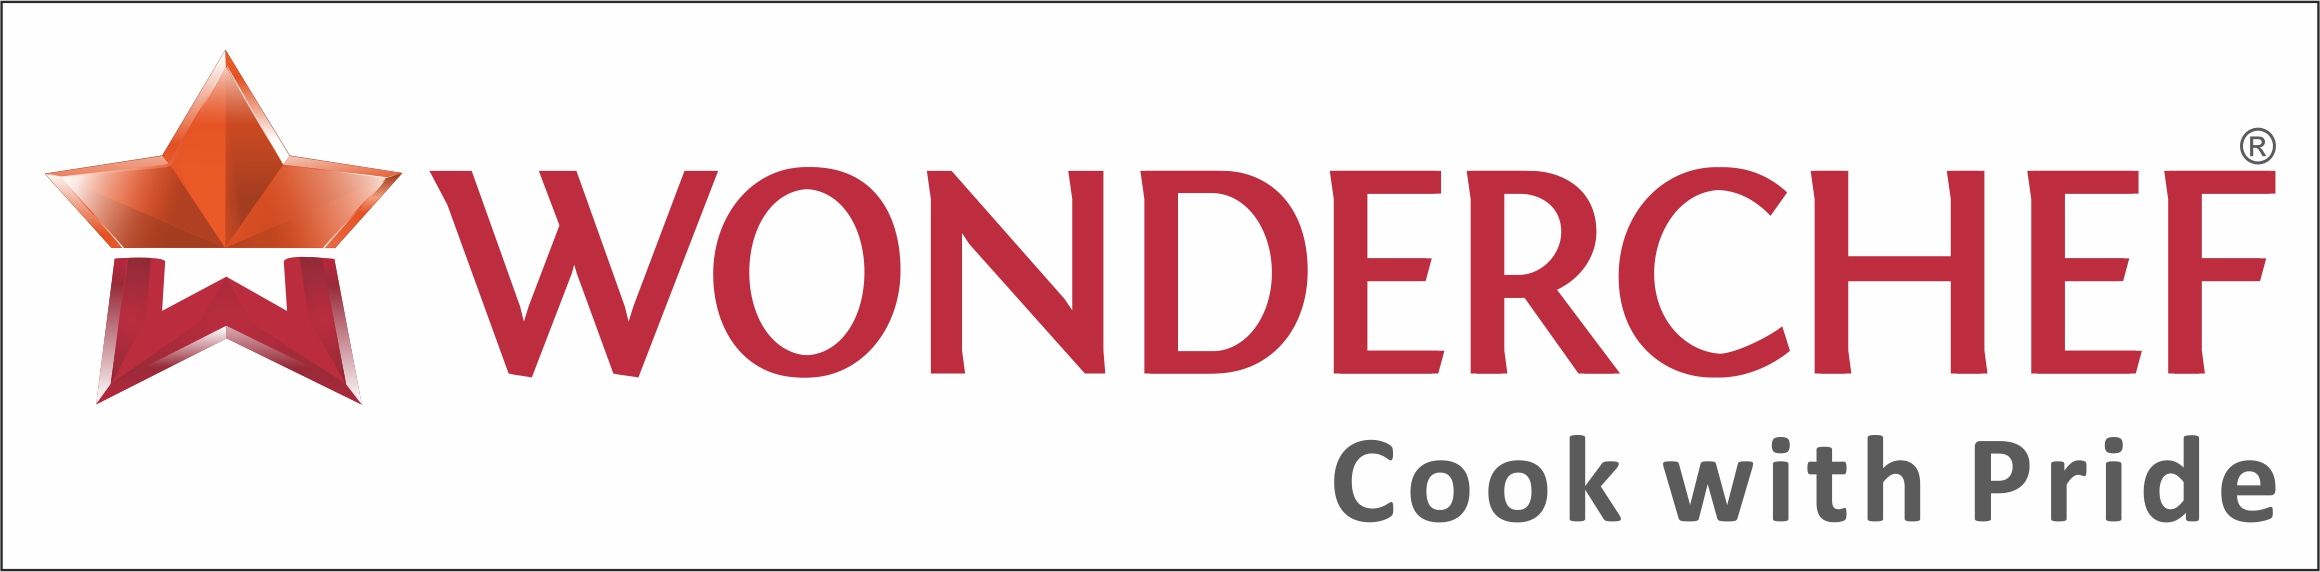 Wonderchef logo